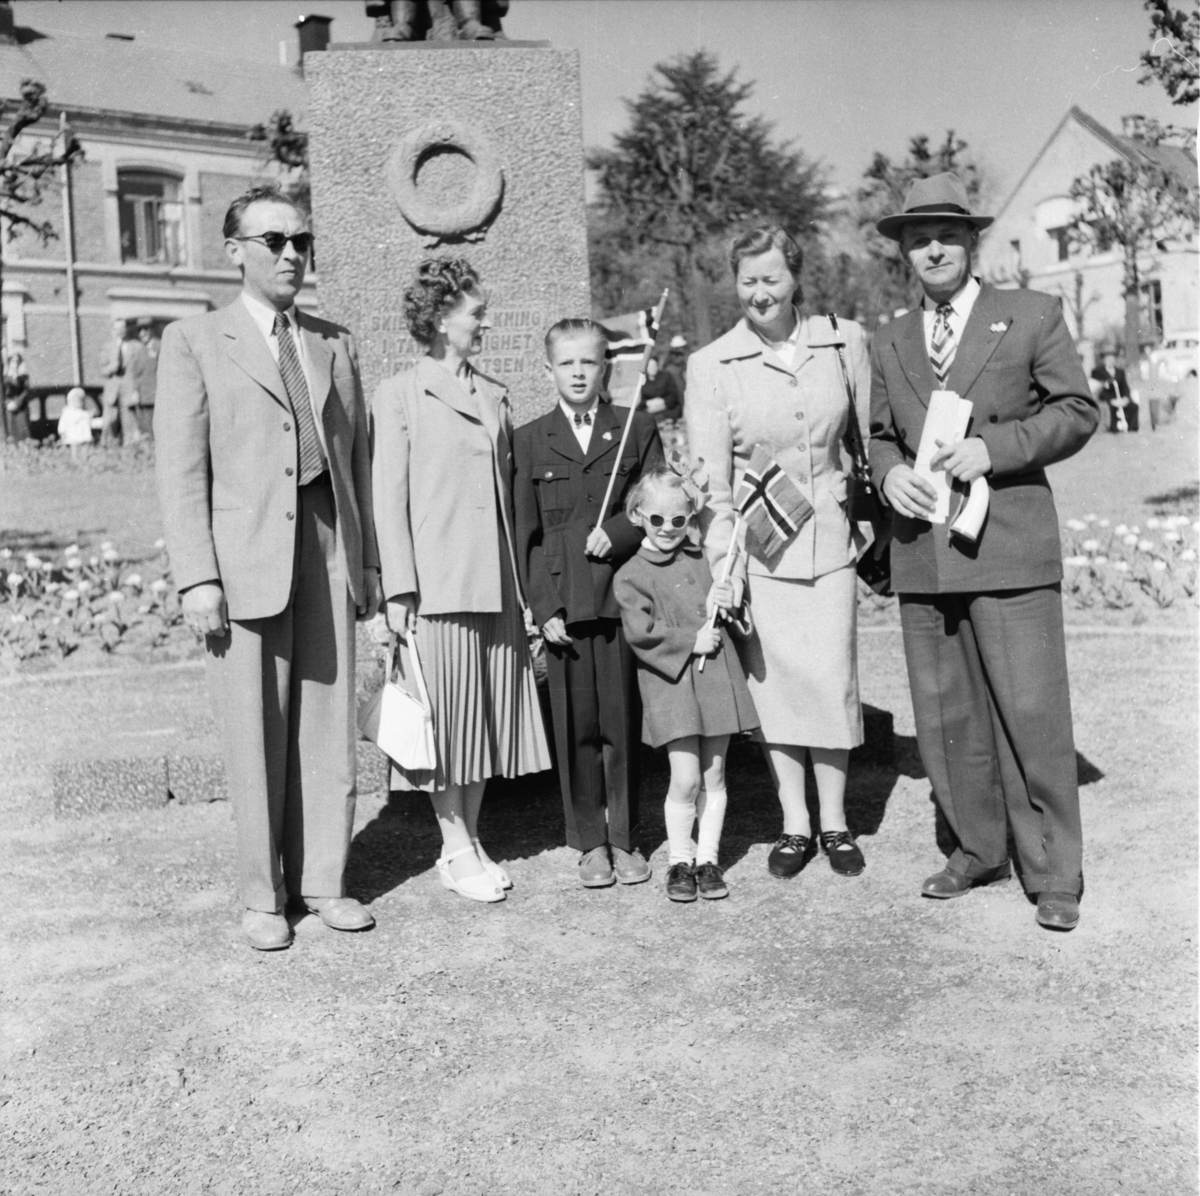 Vardens arkiv. "17 mai feiring. Seks mennesker fotografert foran minnesmerket for de falne i krigen 1940-1945 i Skien"  17.05.1954